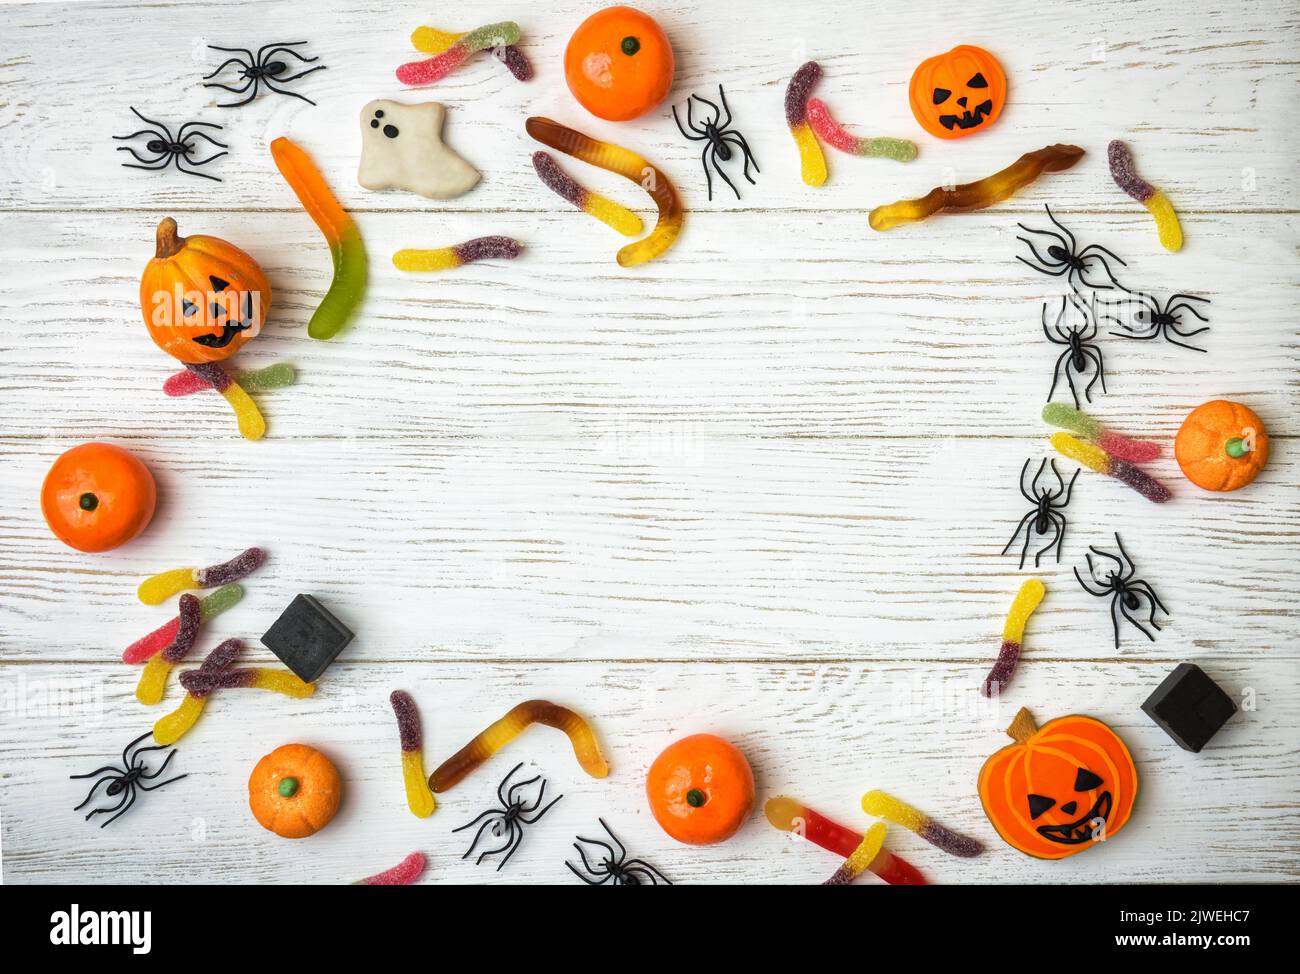 Dulces y decoraciones de Halloween sobre fondo de madera blanca. Vista superior del marco de Halloween con galletas, fantasma, arañas y dulces sobre una mesa de madera, la plana Foto de stock